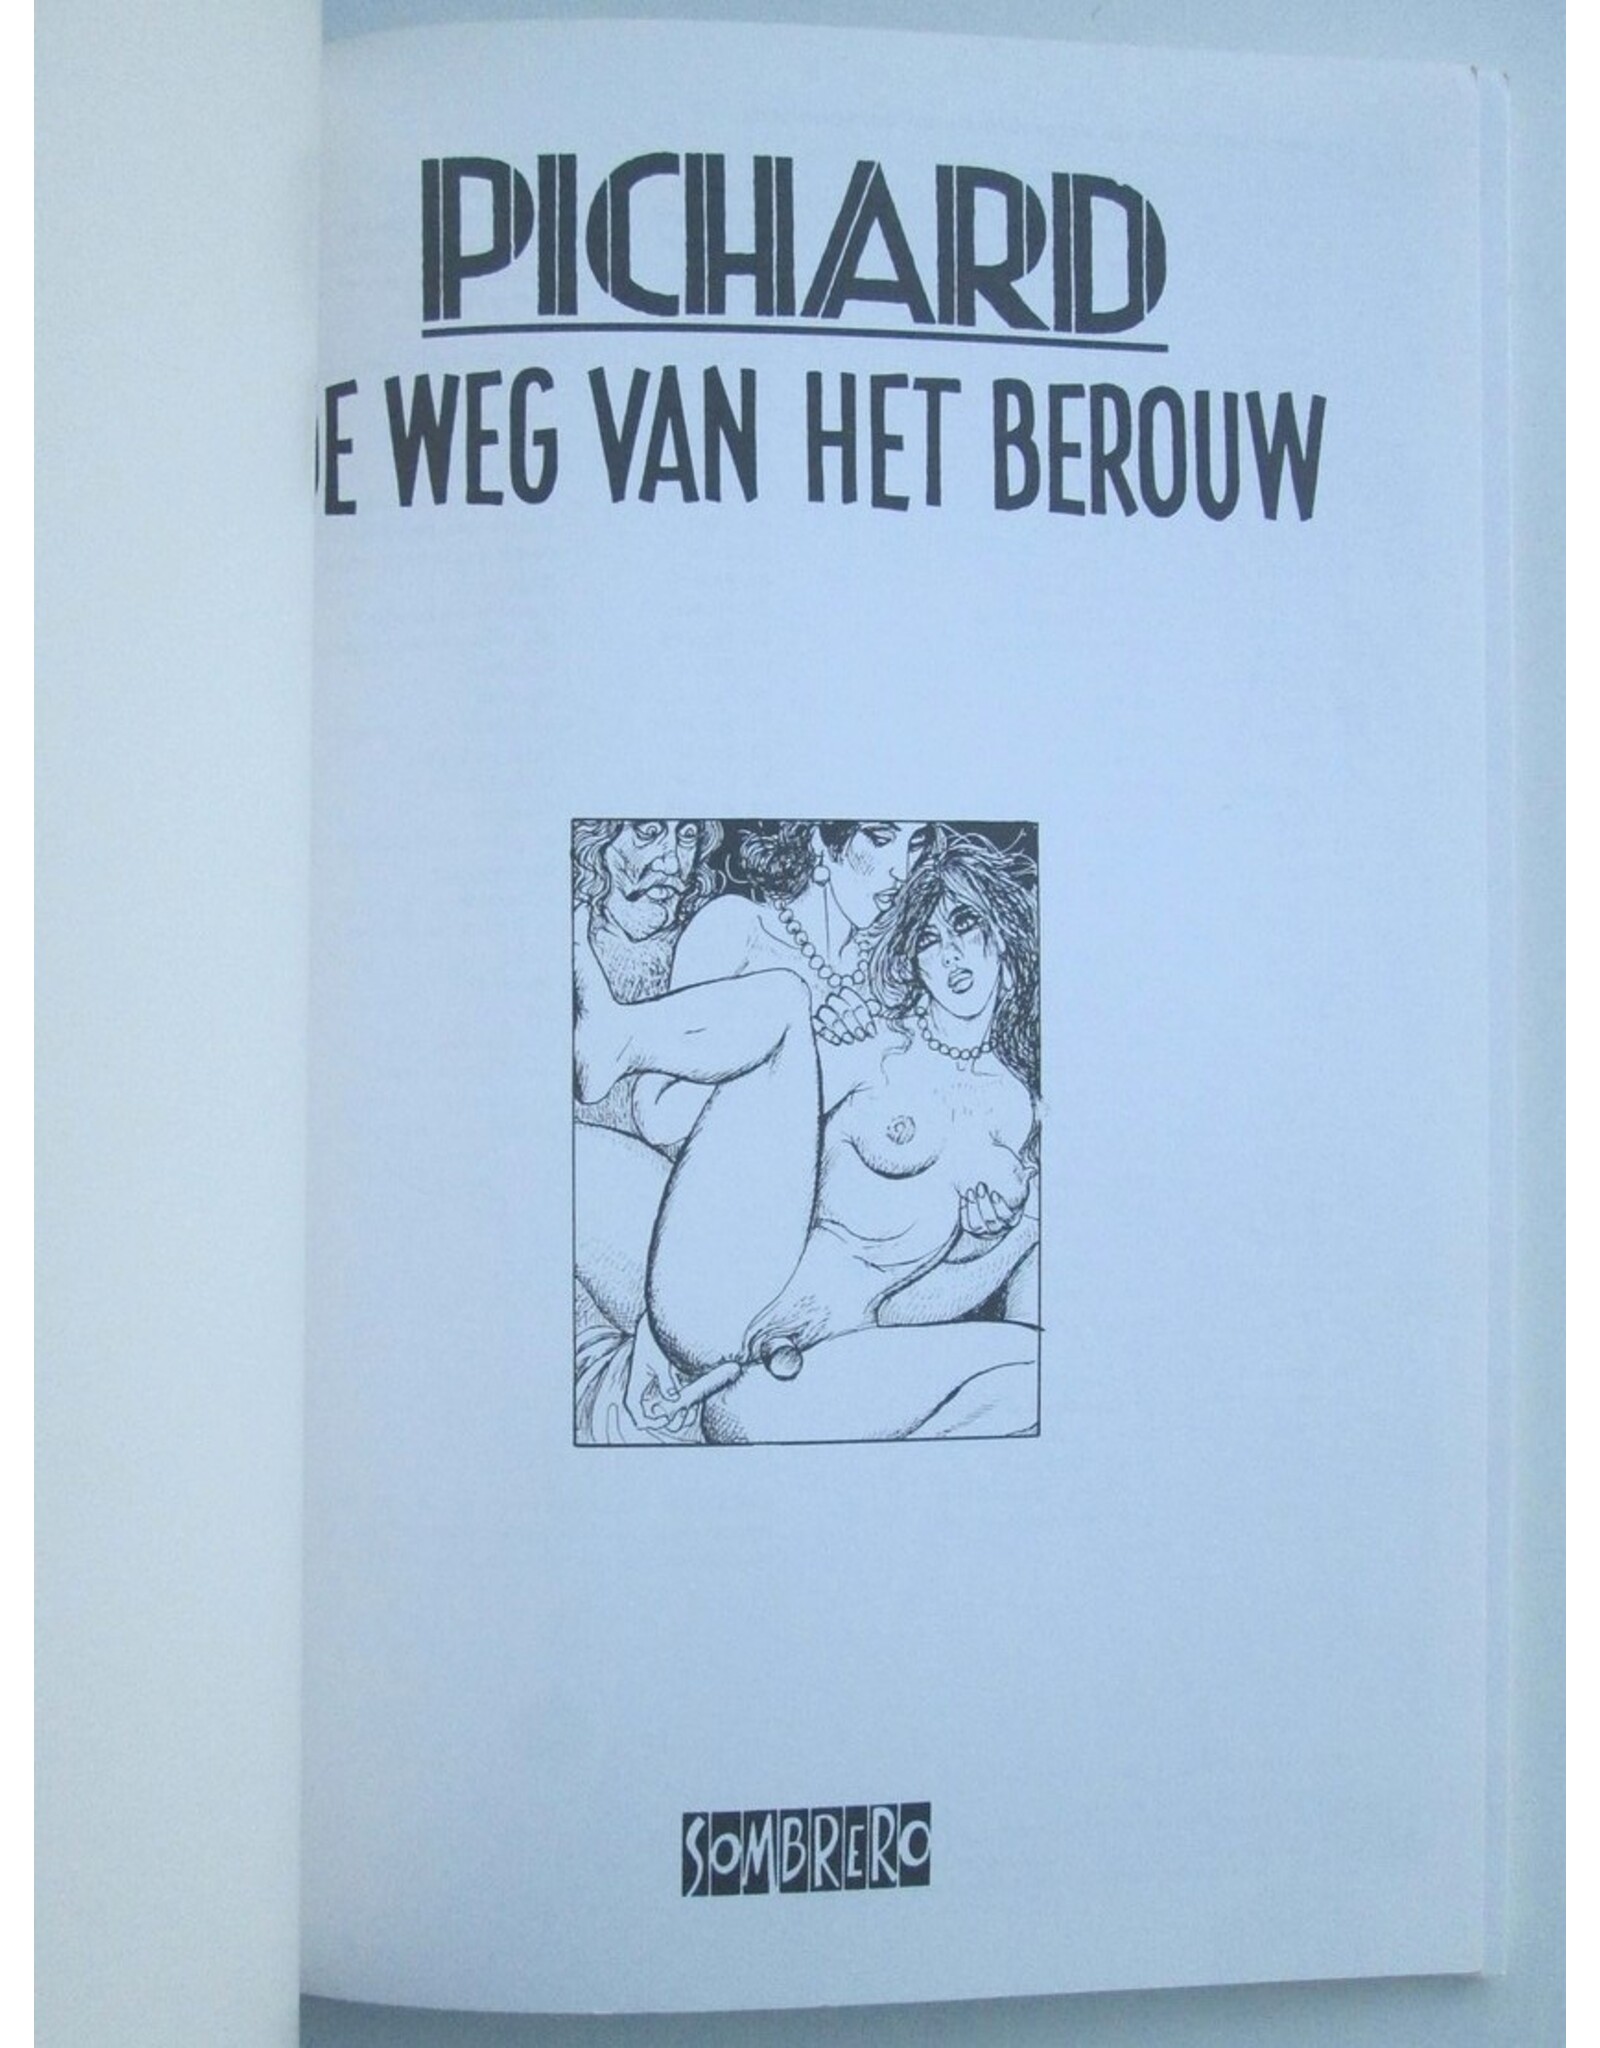 Georges Pichard - De weg van het berouw